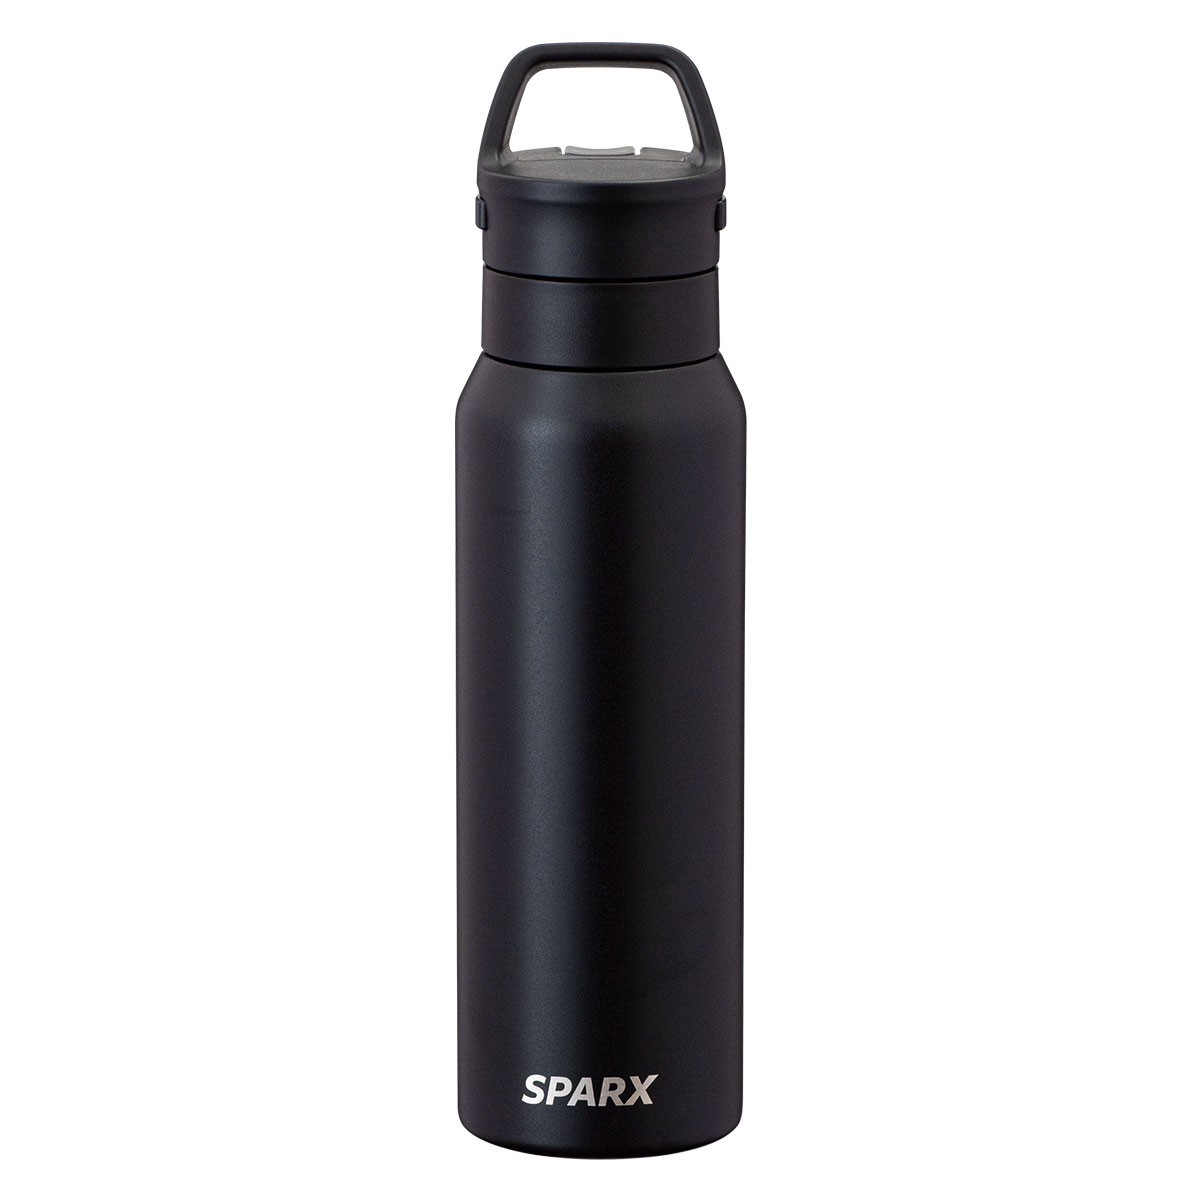 SPARX 真空断熱炭酸用ボトル 750ml ブラック